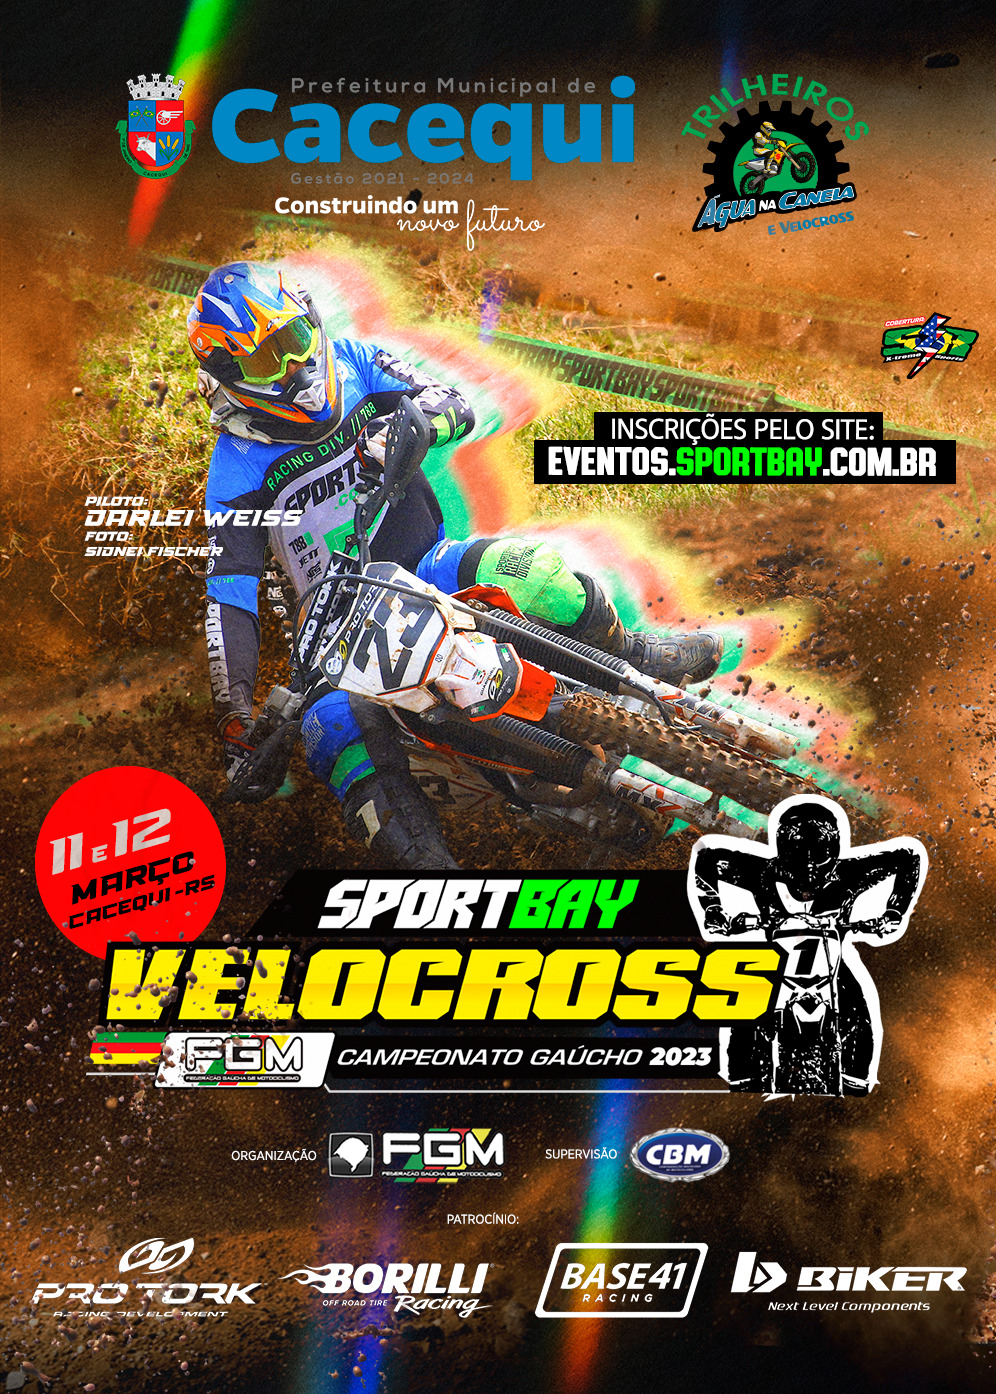 Calendário esportivo: Viva Motocross chega à 11ª edição e vai